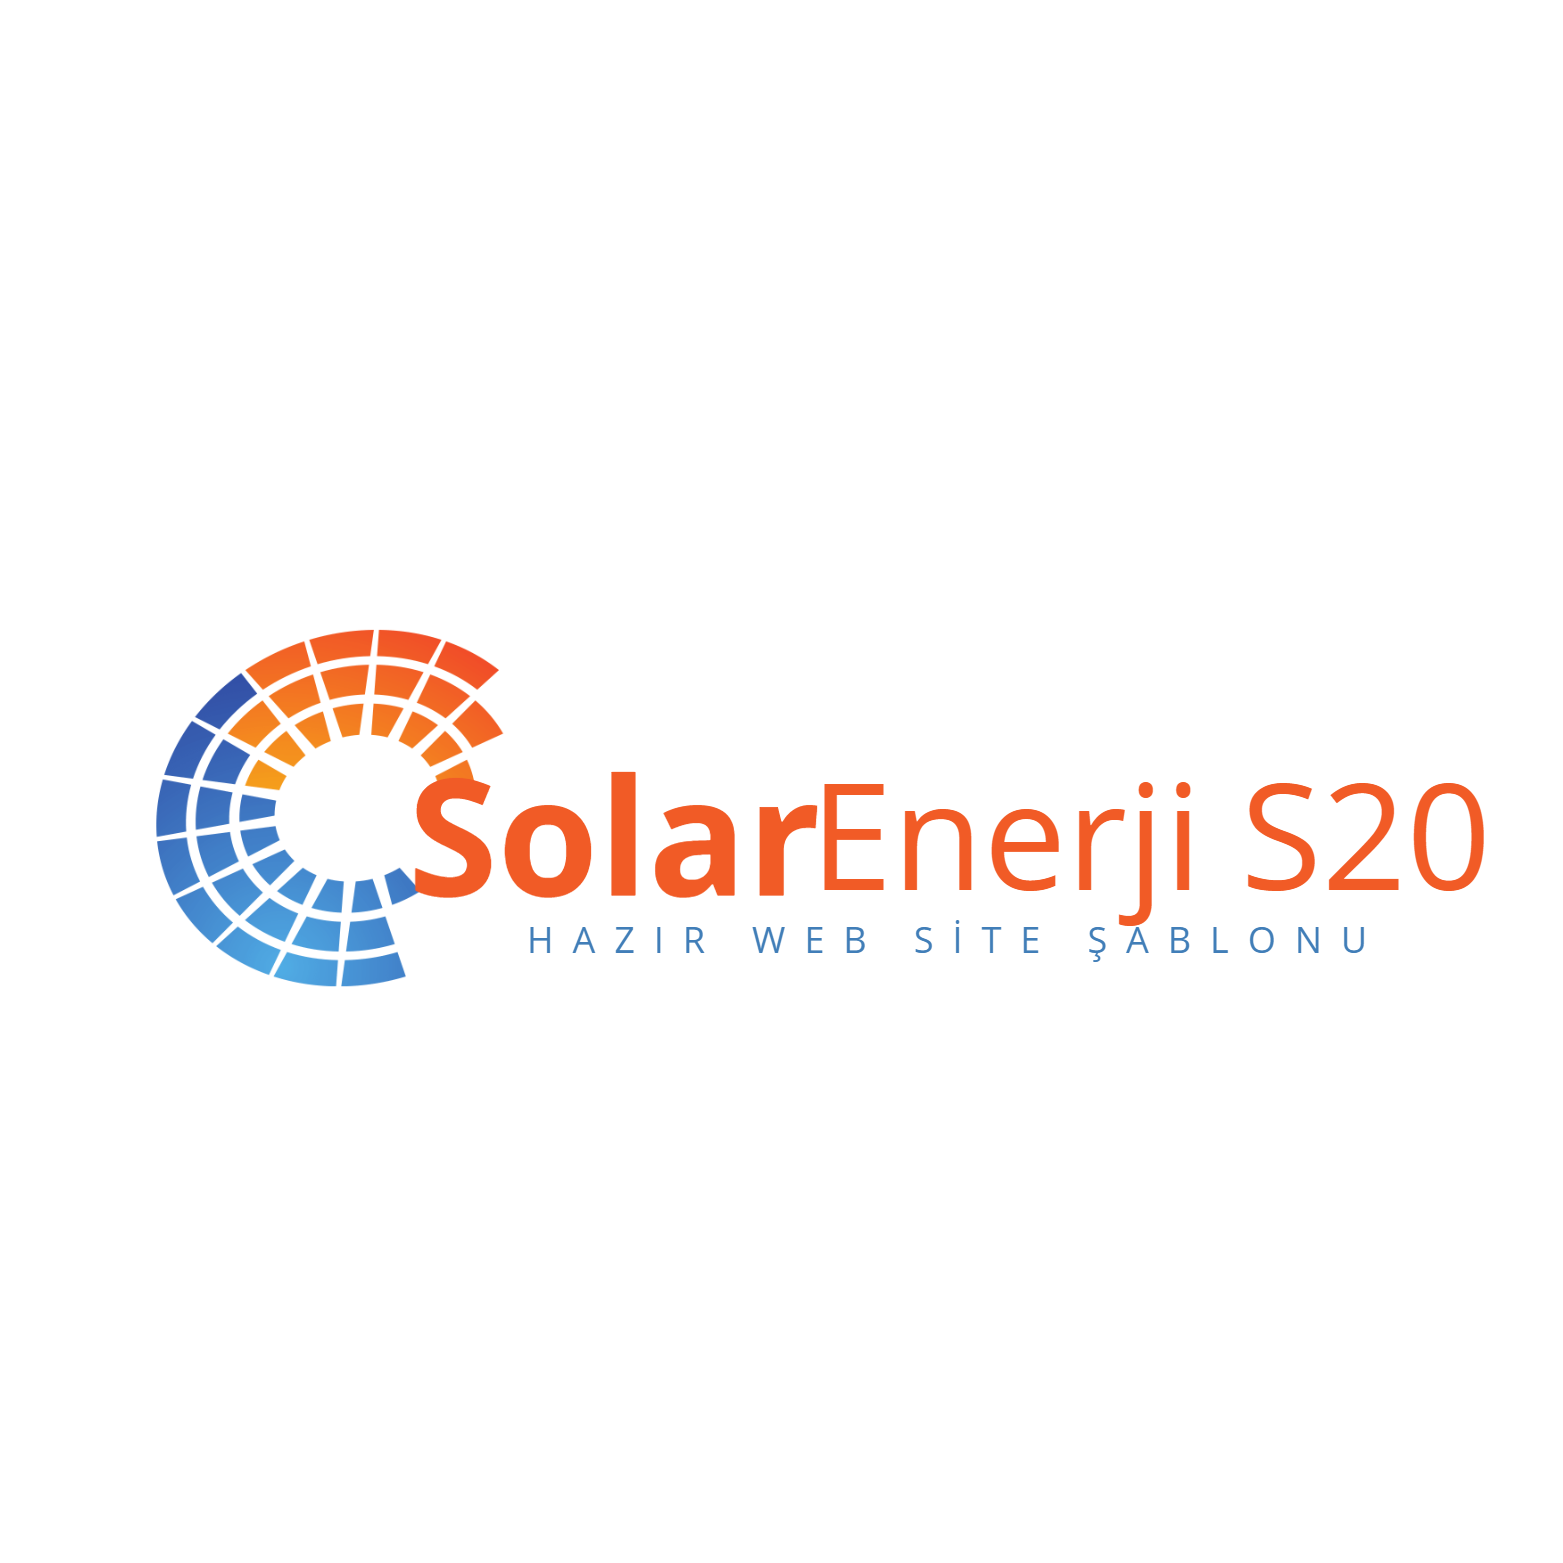 Solar Enerji S20 İnternet Sitesi